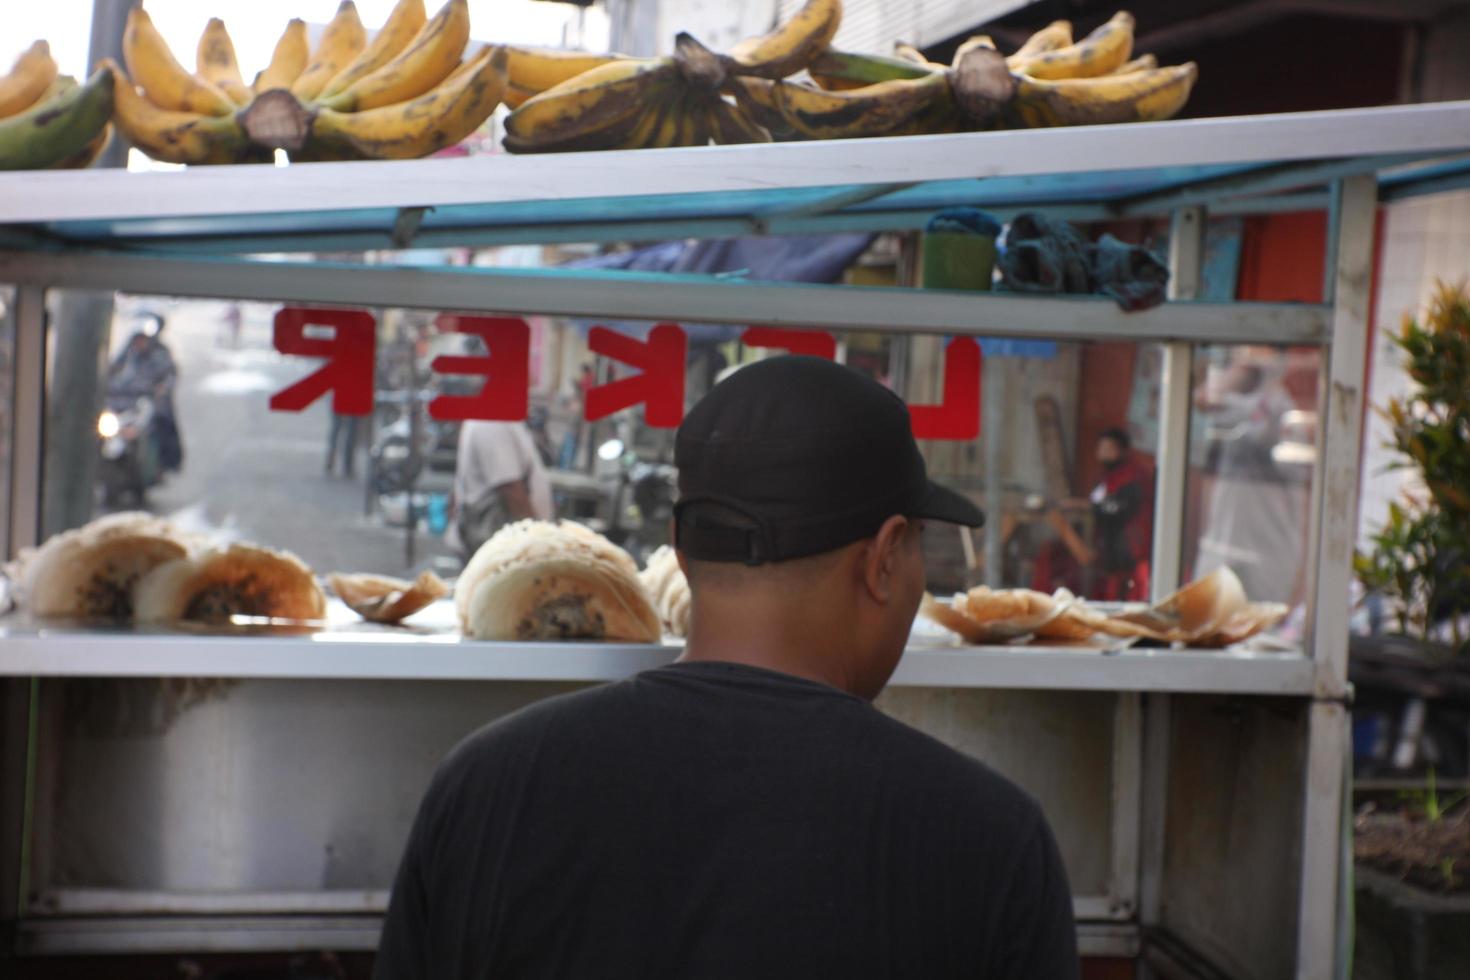 magelang, indonésie, 2022-leker cake, crêpes fines croustillantes traditionnelles de collations populaires en indonésie photo